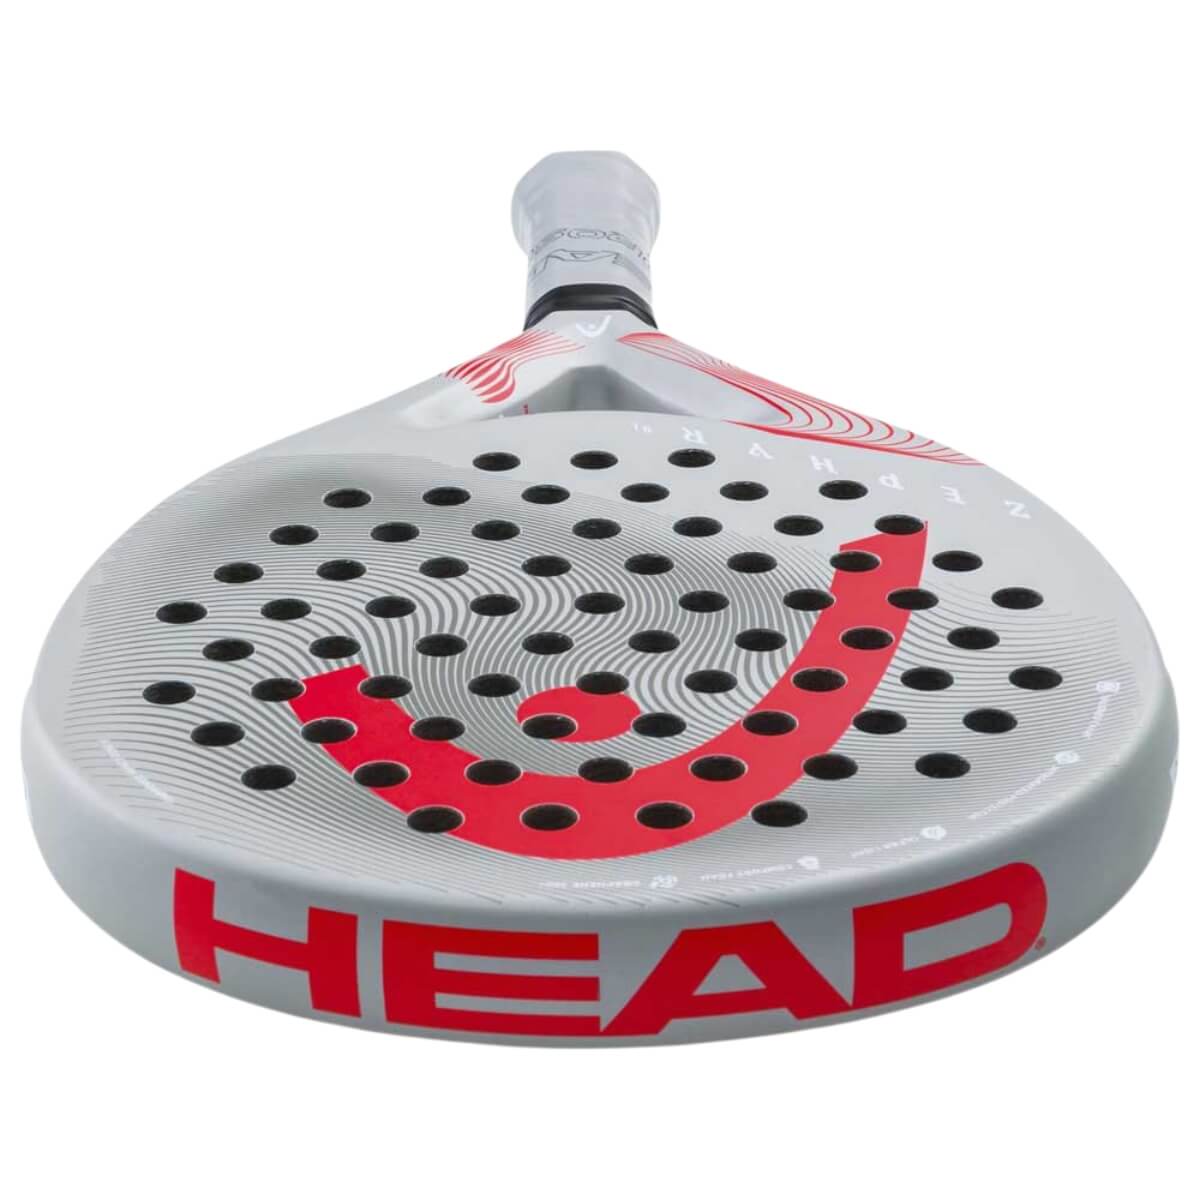 Head Zephur UL grey red padel racket bovenaanzicht